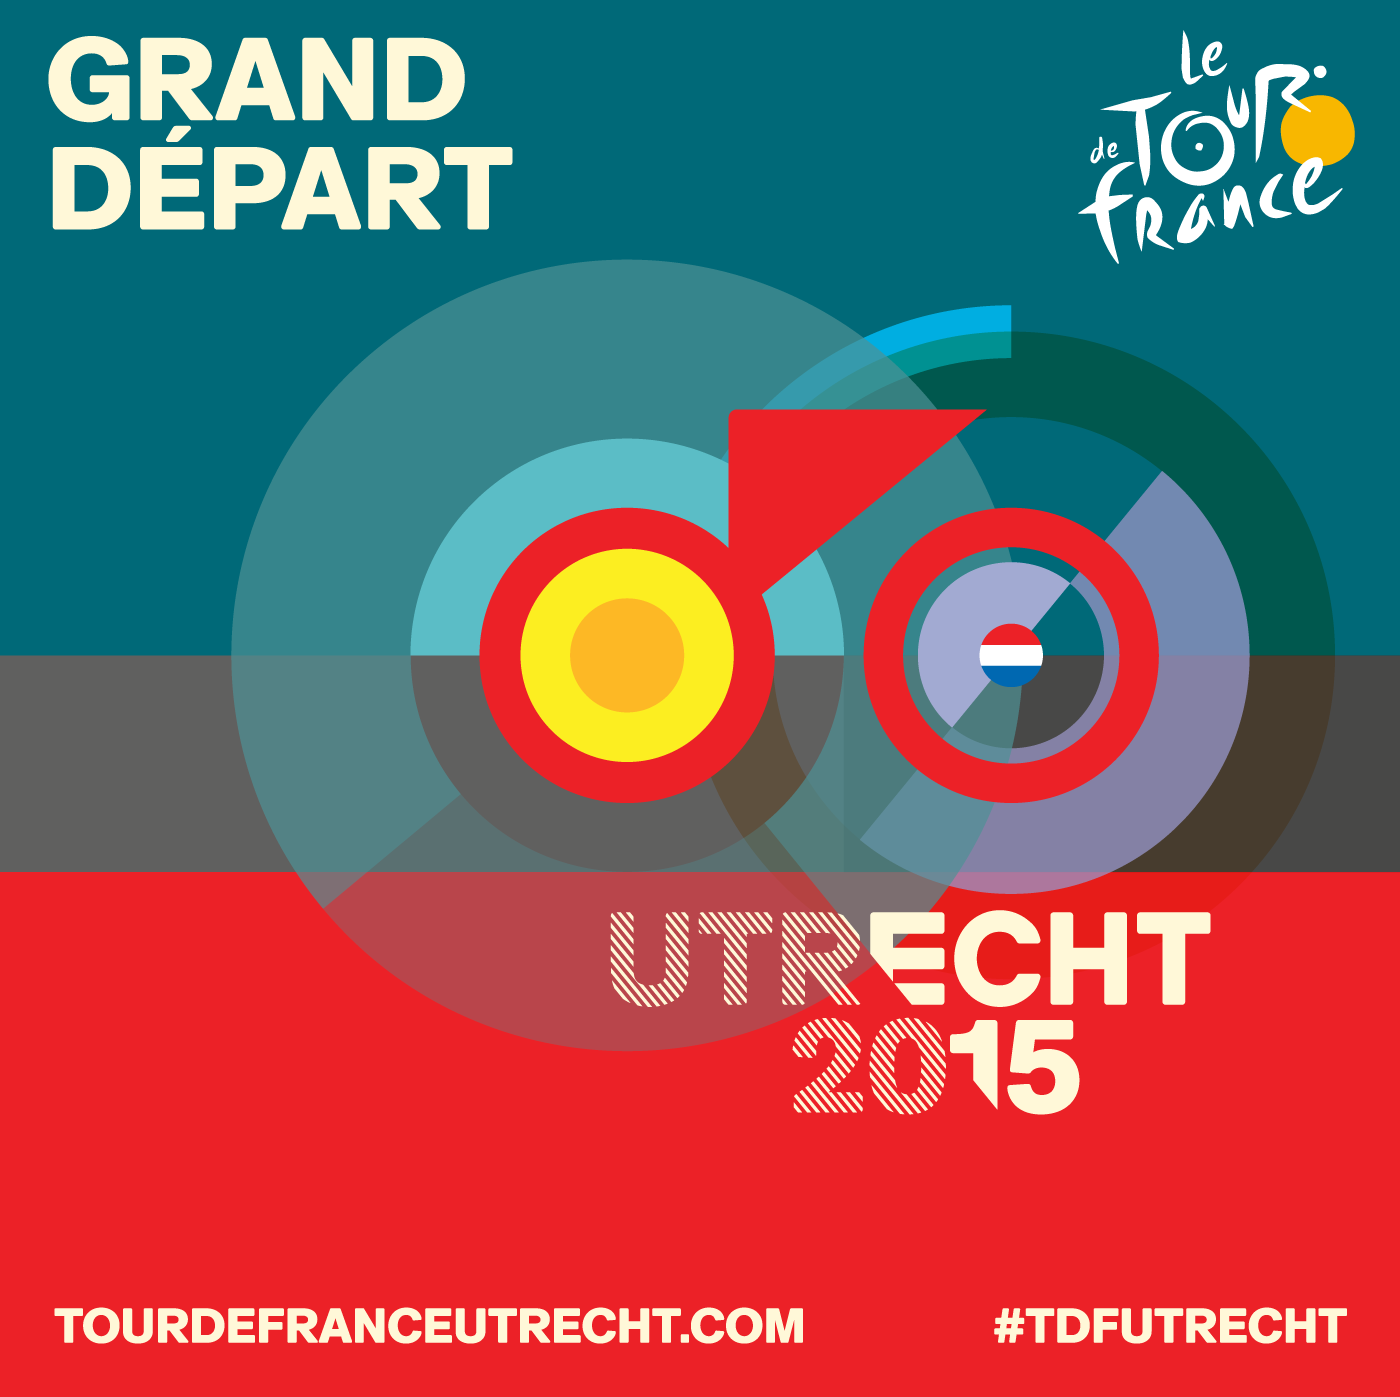 Grand Départ Tour de France 2015视觉形象设计